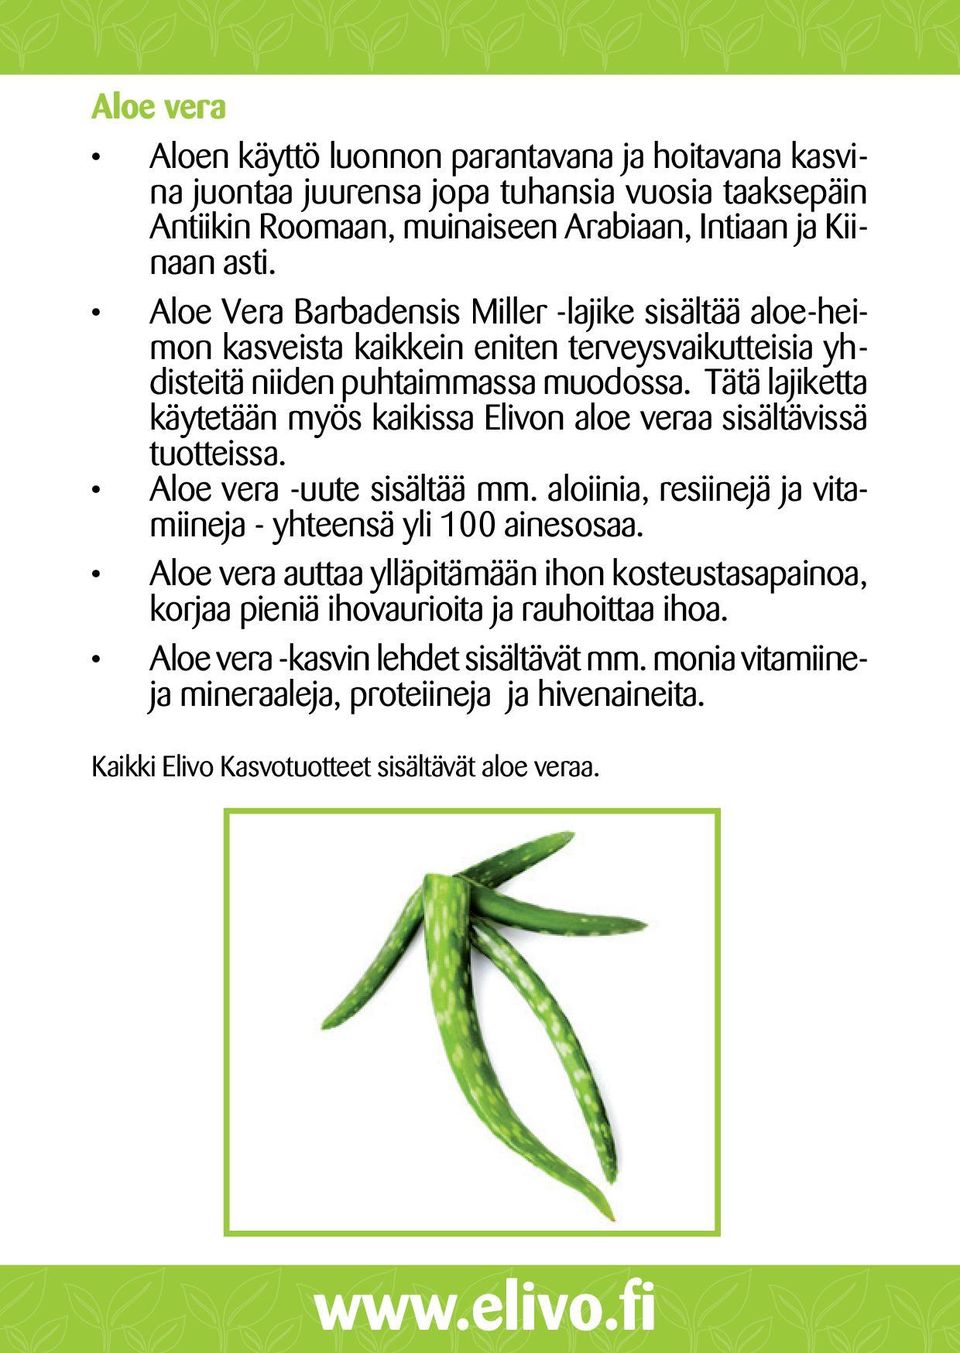 Tätä lajiketta käytetään myös kaikissa Elivon aloe veraa sisältävissä tuotteissa. Aloe vera -uute sisältää mm. aloiinia, resiinejä ja vitamiineja - yhteensä yli 100 ainesosaa.